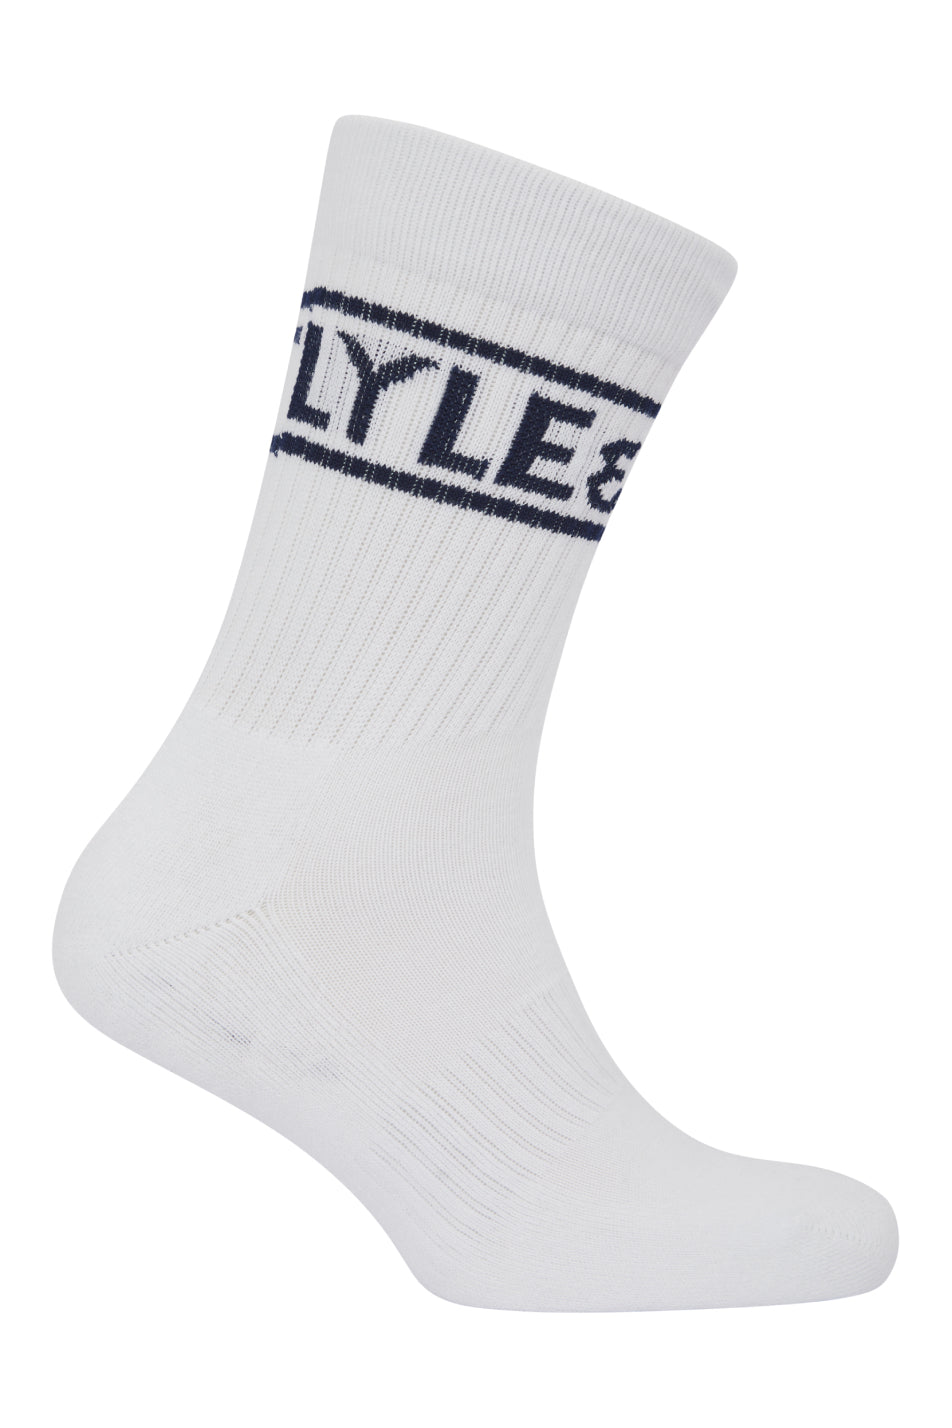 Lyle & Scott 5 Pack Men's Ray Contrast Logo Tubular Sock